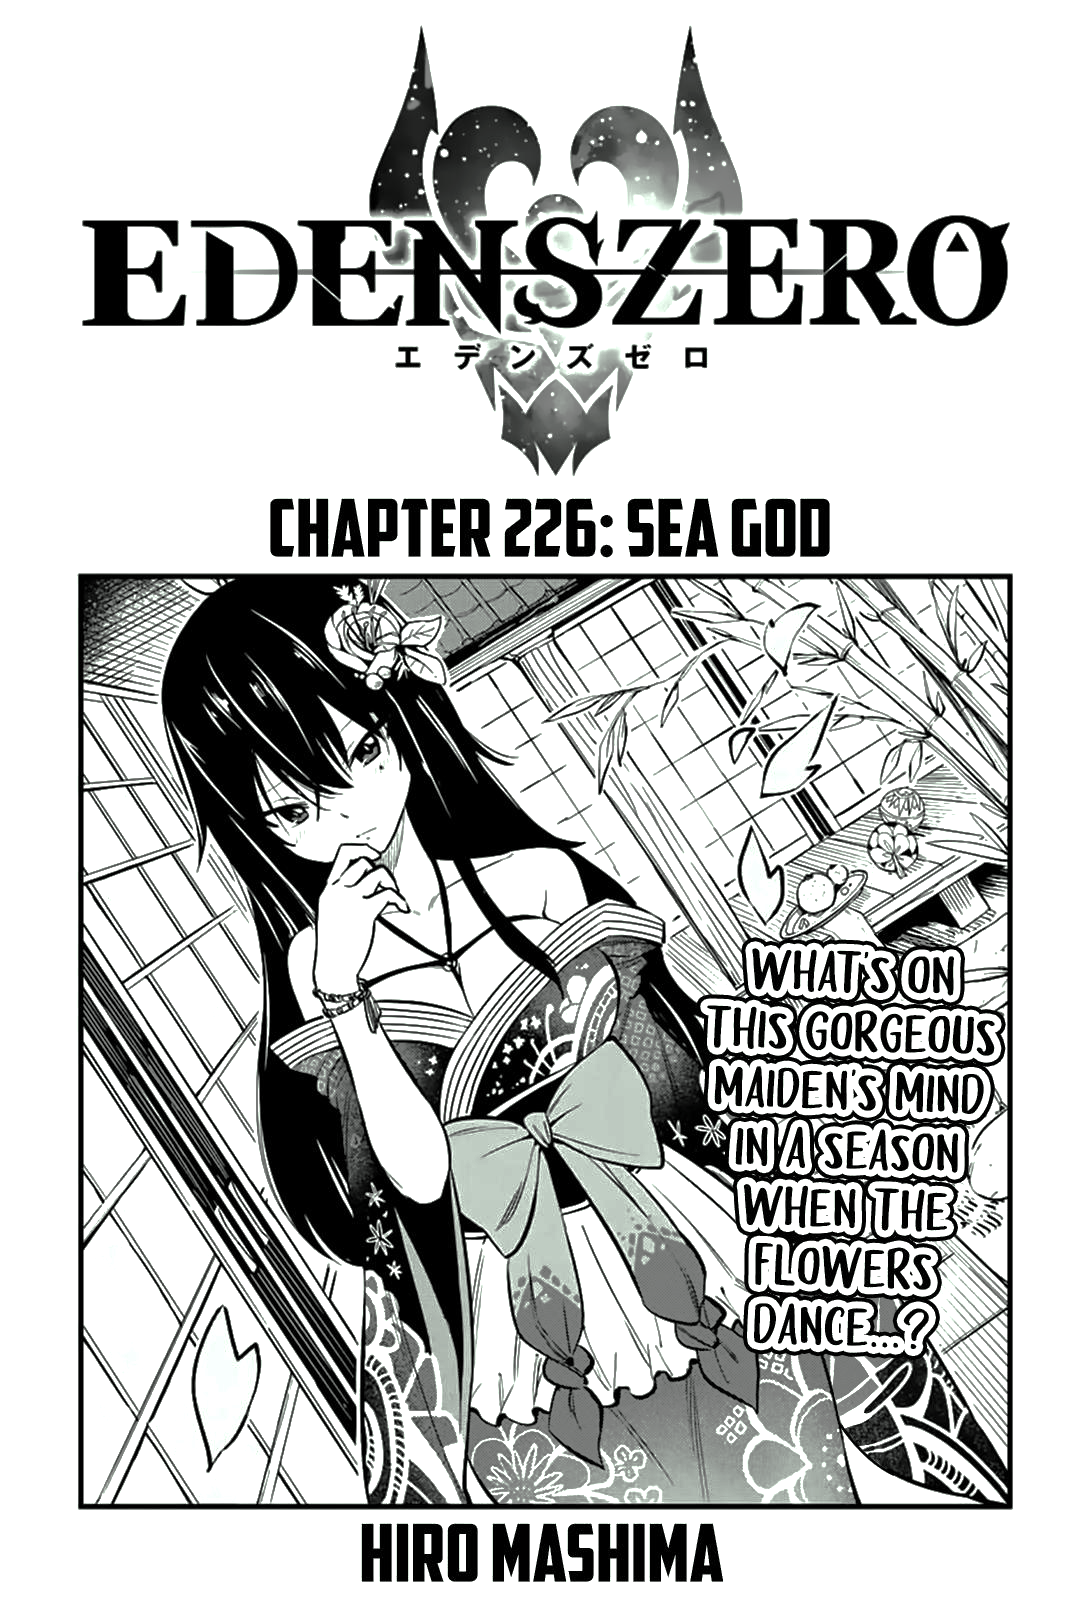 Belial Goer: The Tiebreaking Final Round! Edens Zero Chapter 226 BREAKDOWN